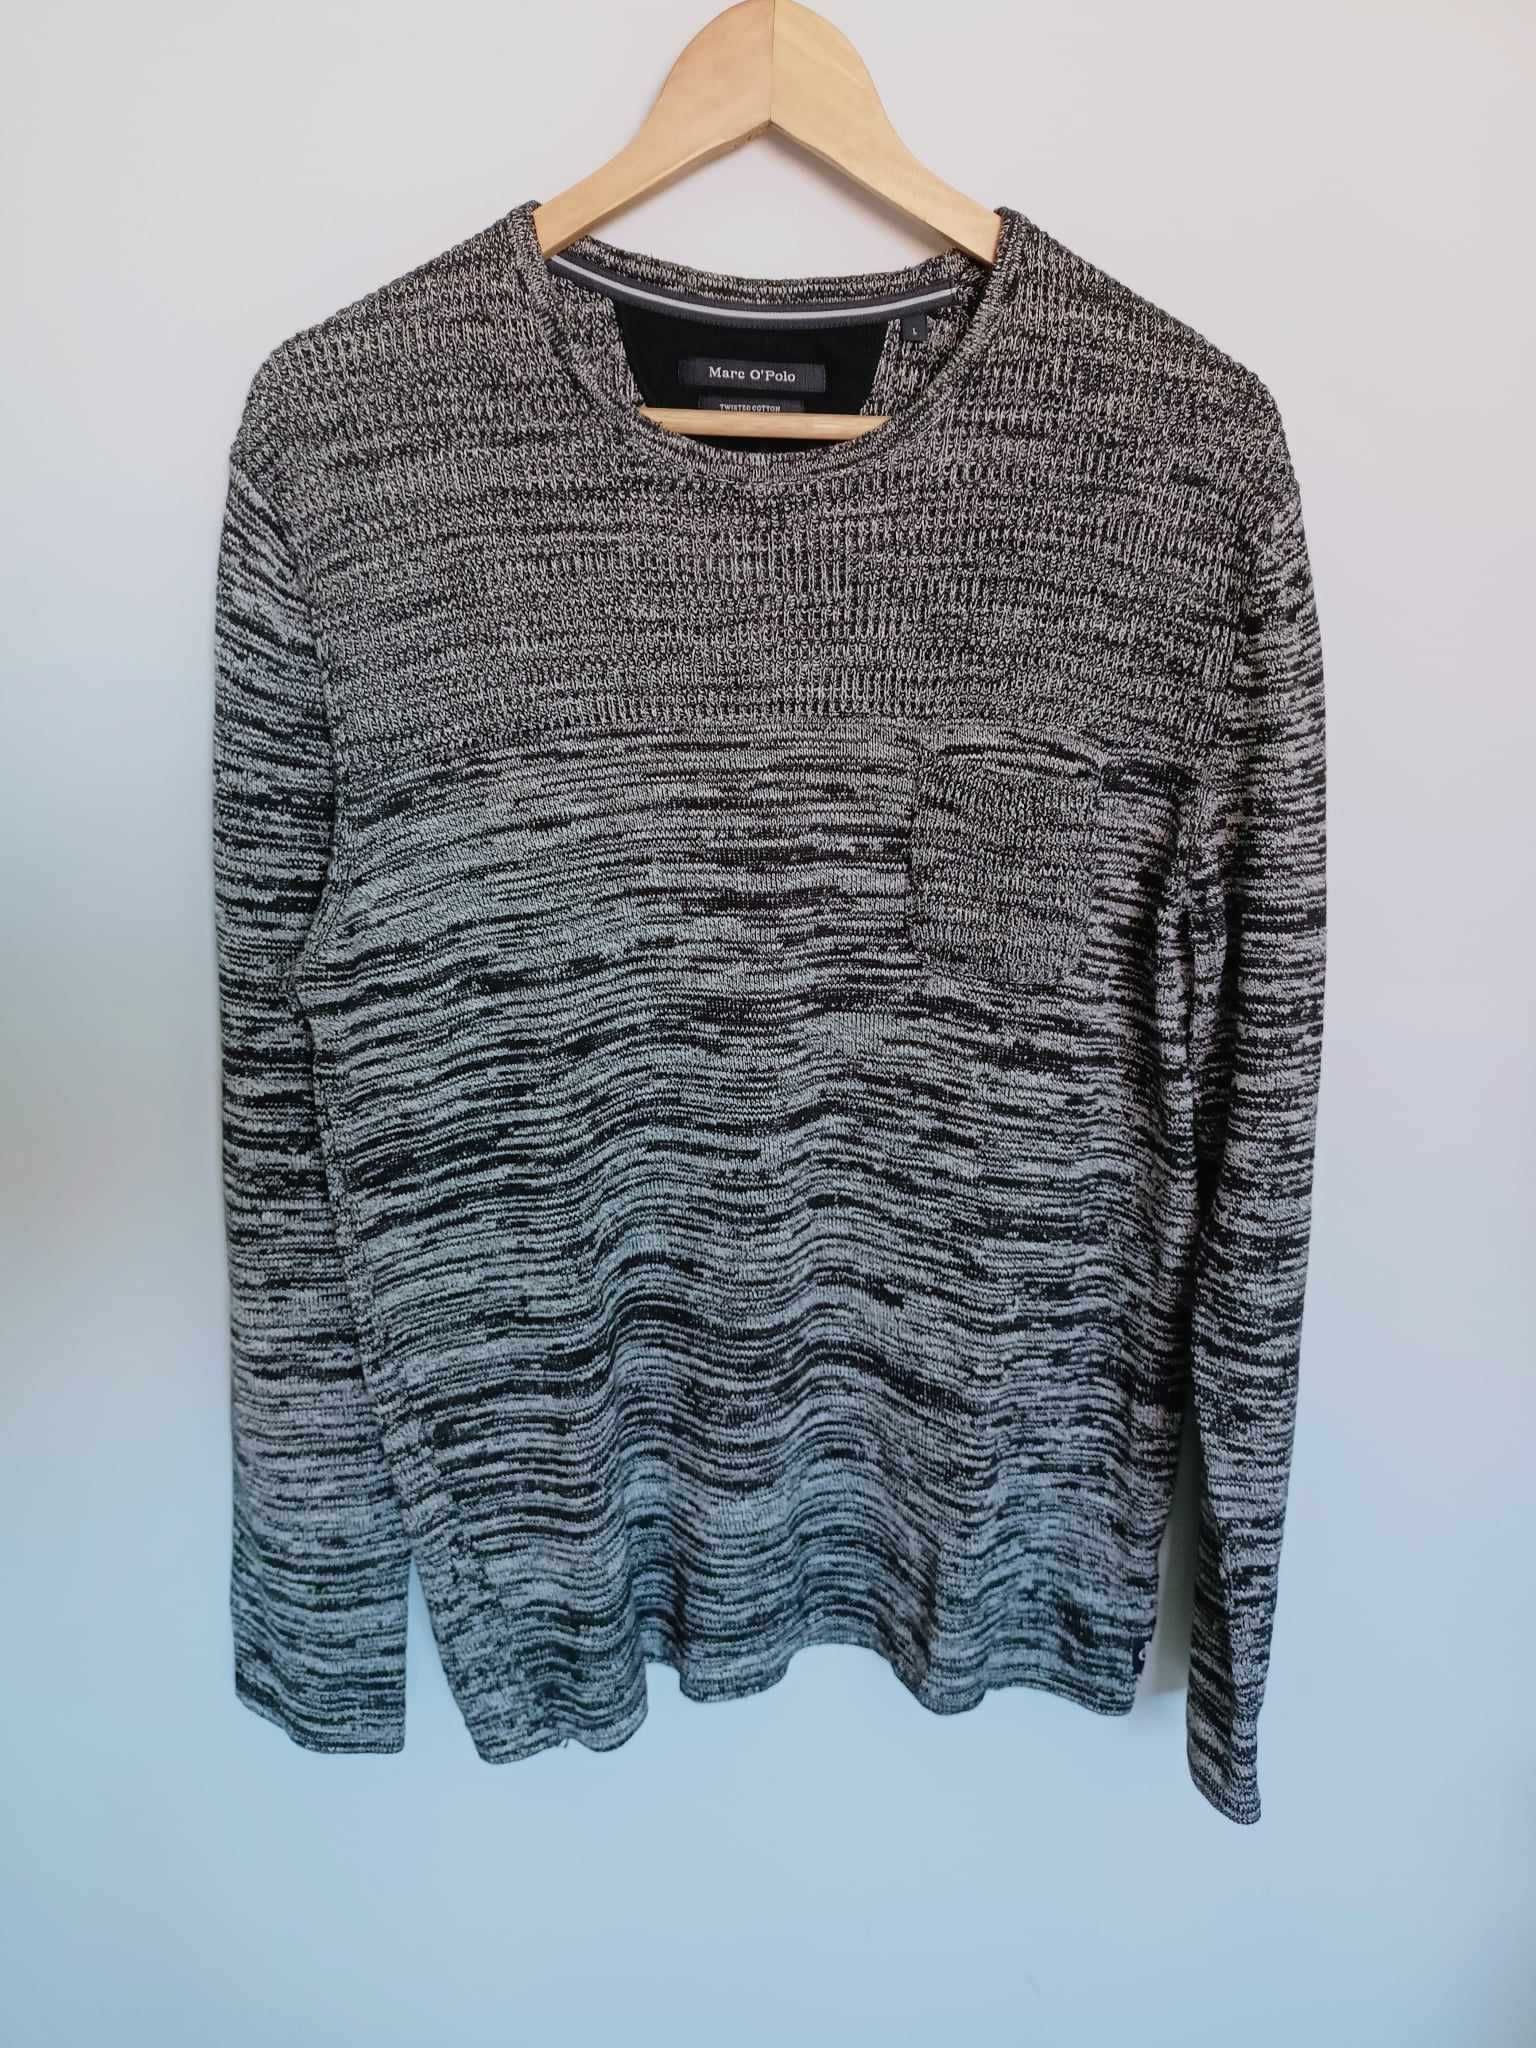 Bawełniany, męski sweterek Marc O'Polo - szary/siwy, rozmiar L